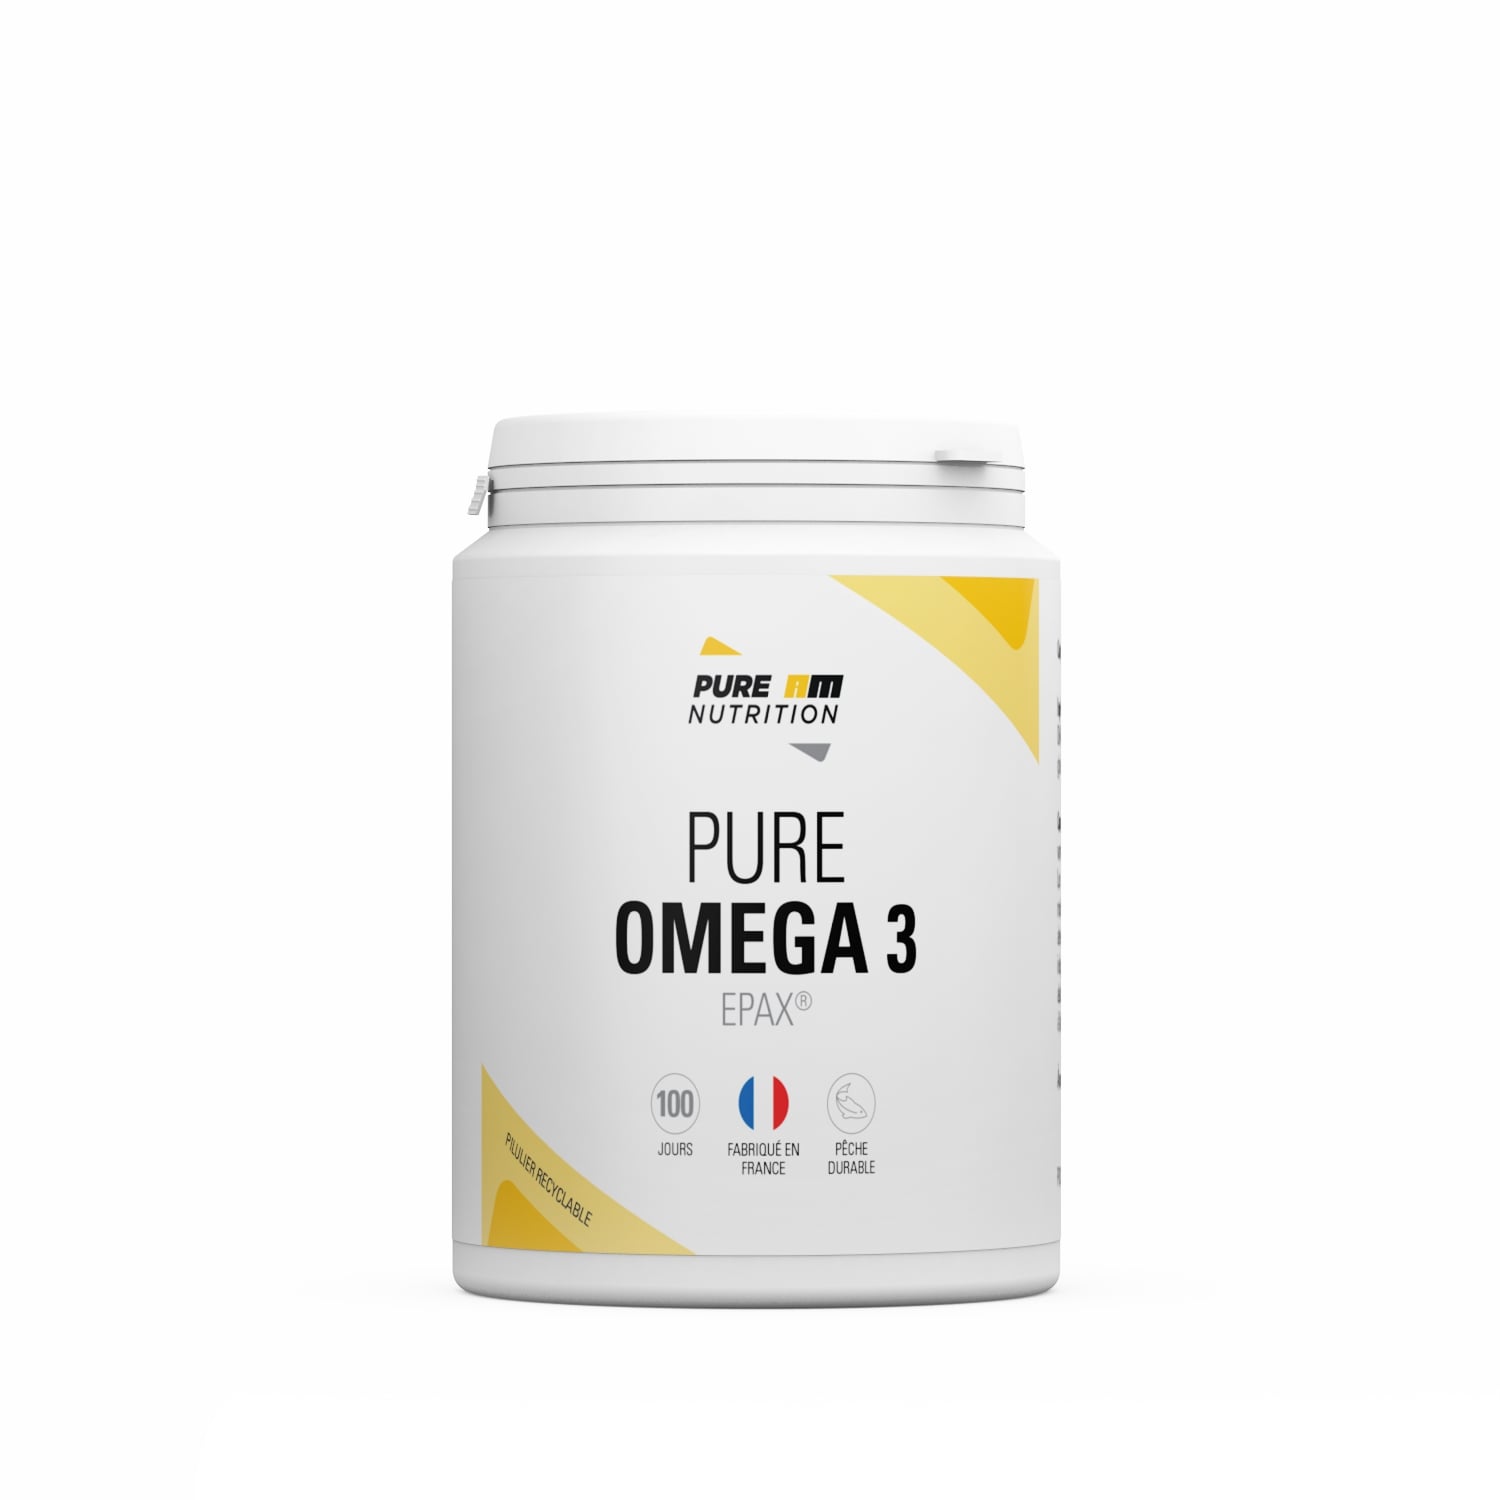 Oméga 3 PURE AM Nutrition